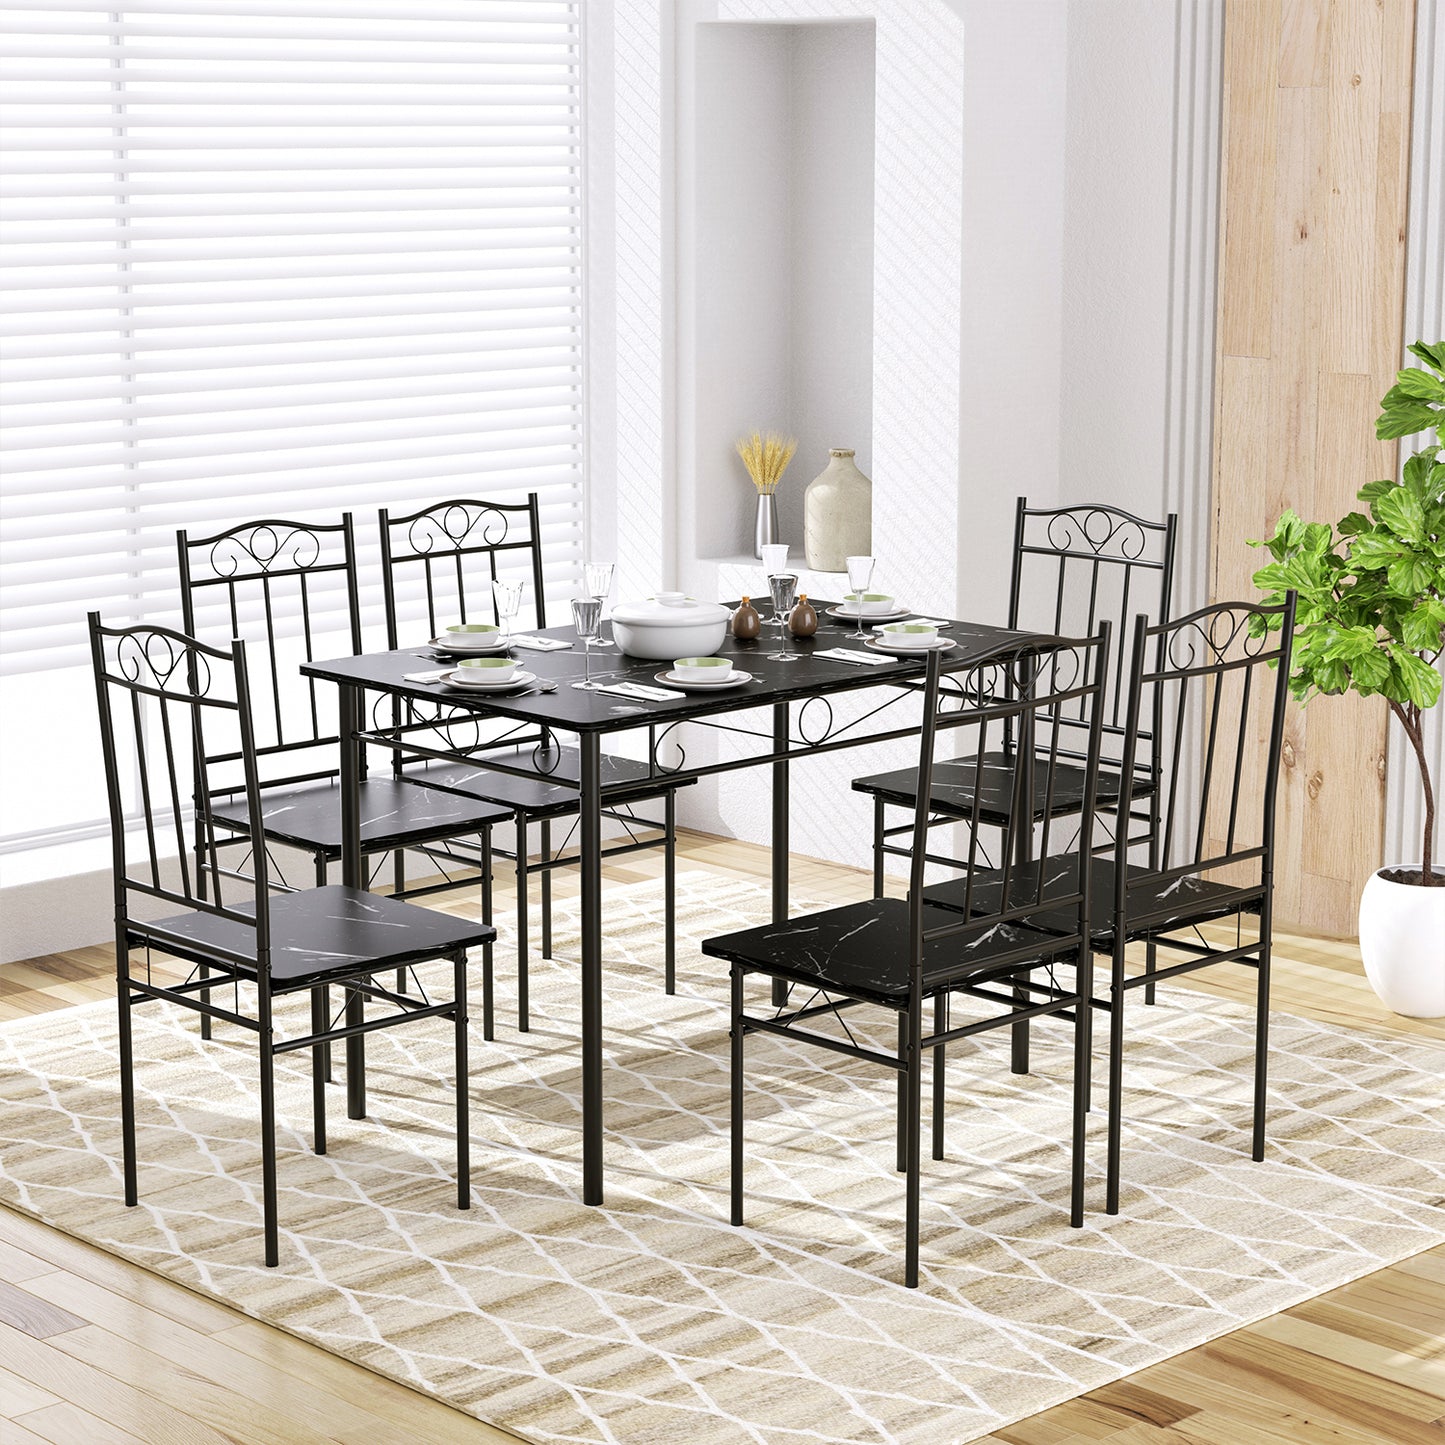 Ensemble table à manger 109x 69x 75 cm et 4 chaises - marbre noir et noir - style industriel pour cuisine, salle à manger, salon